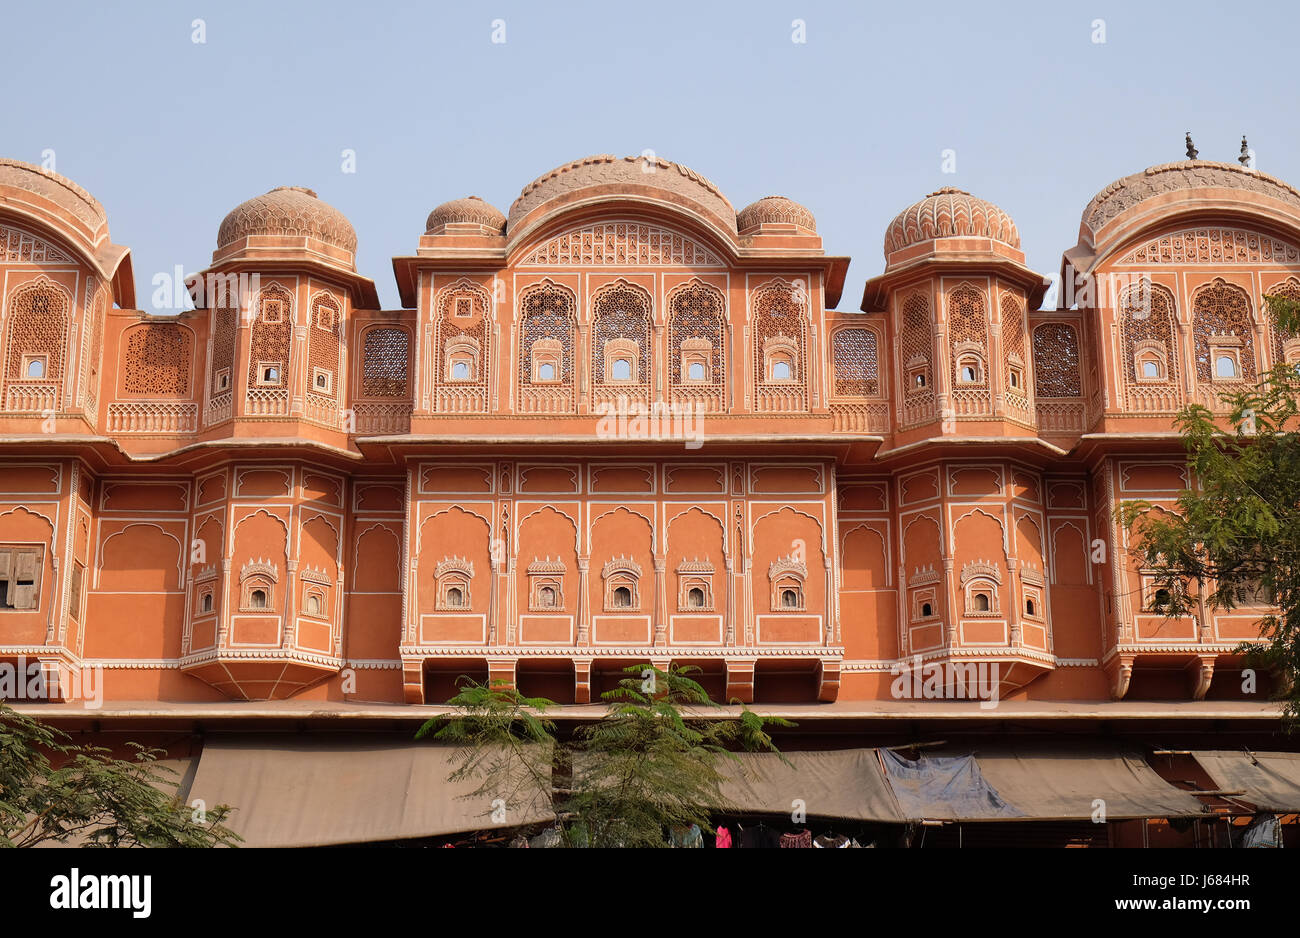 Dettaglio della casa tradizionale a Jaipur, Rajasthan, India. Jaipur è la capitale e la città più grande del Rajasthan Foto Stock